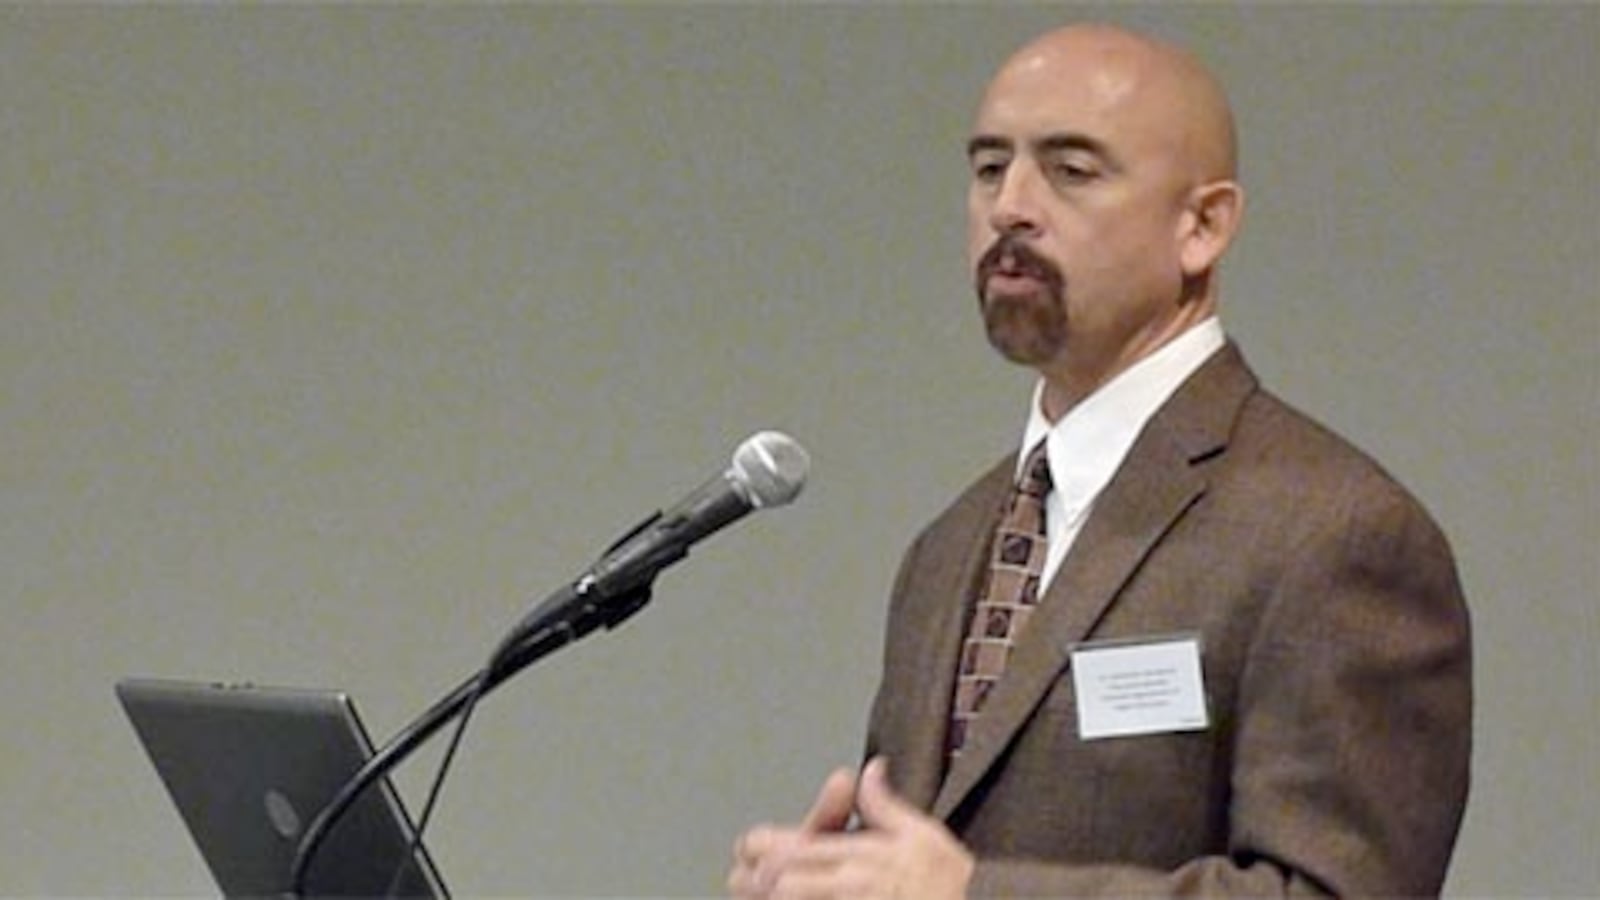 Lt. Gov. Joe Garcia speaks at higher education summit Dec. 2, 2011.